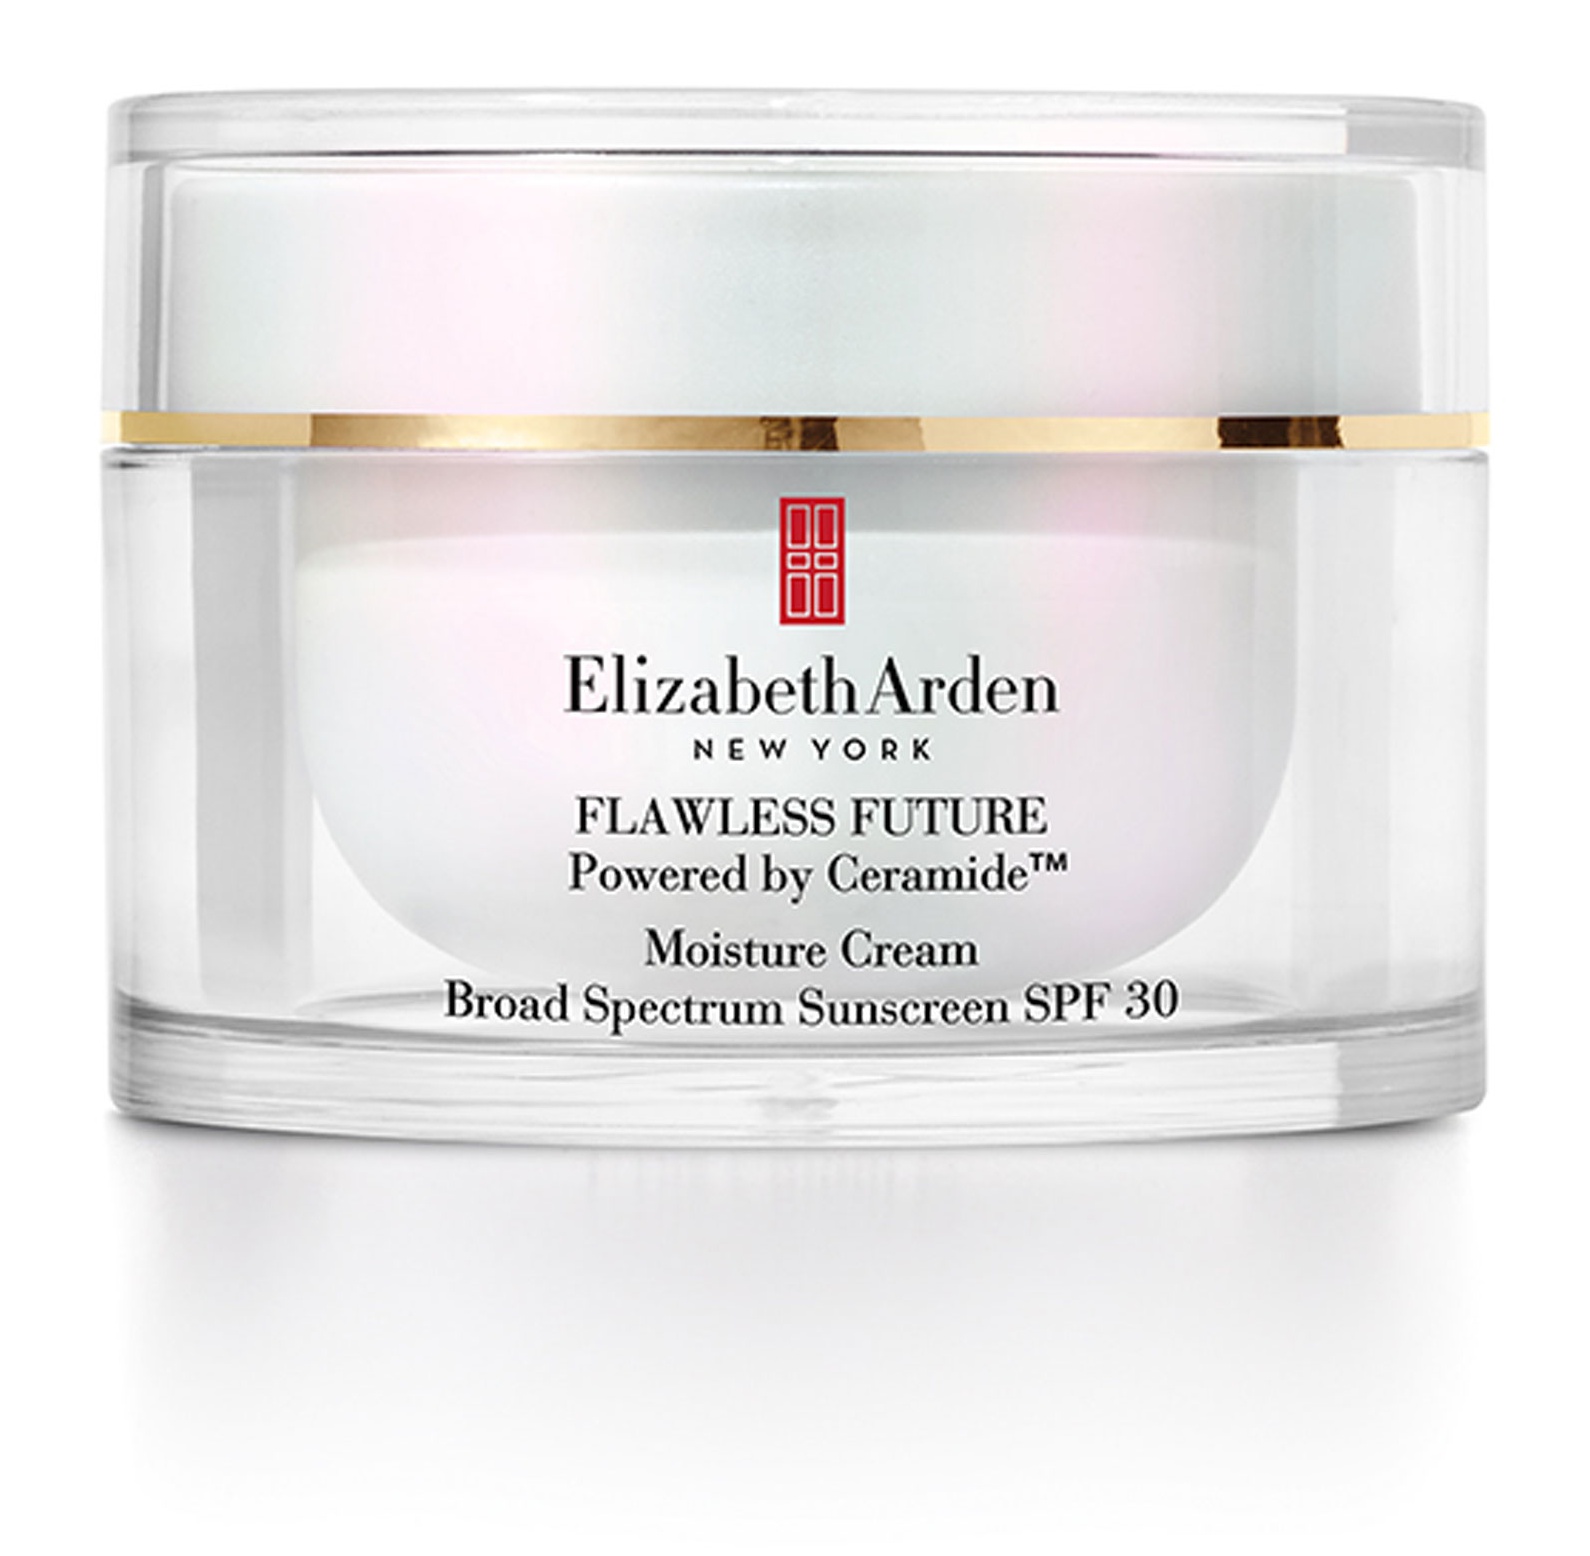 Elizabeth Arden Flawless Future Moisture Cream SPF 30